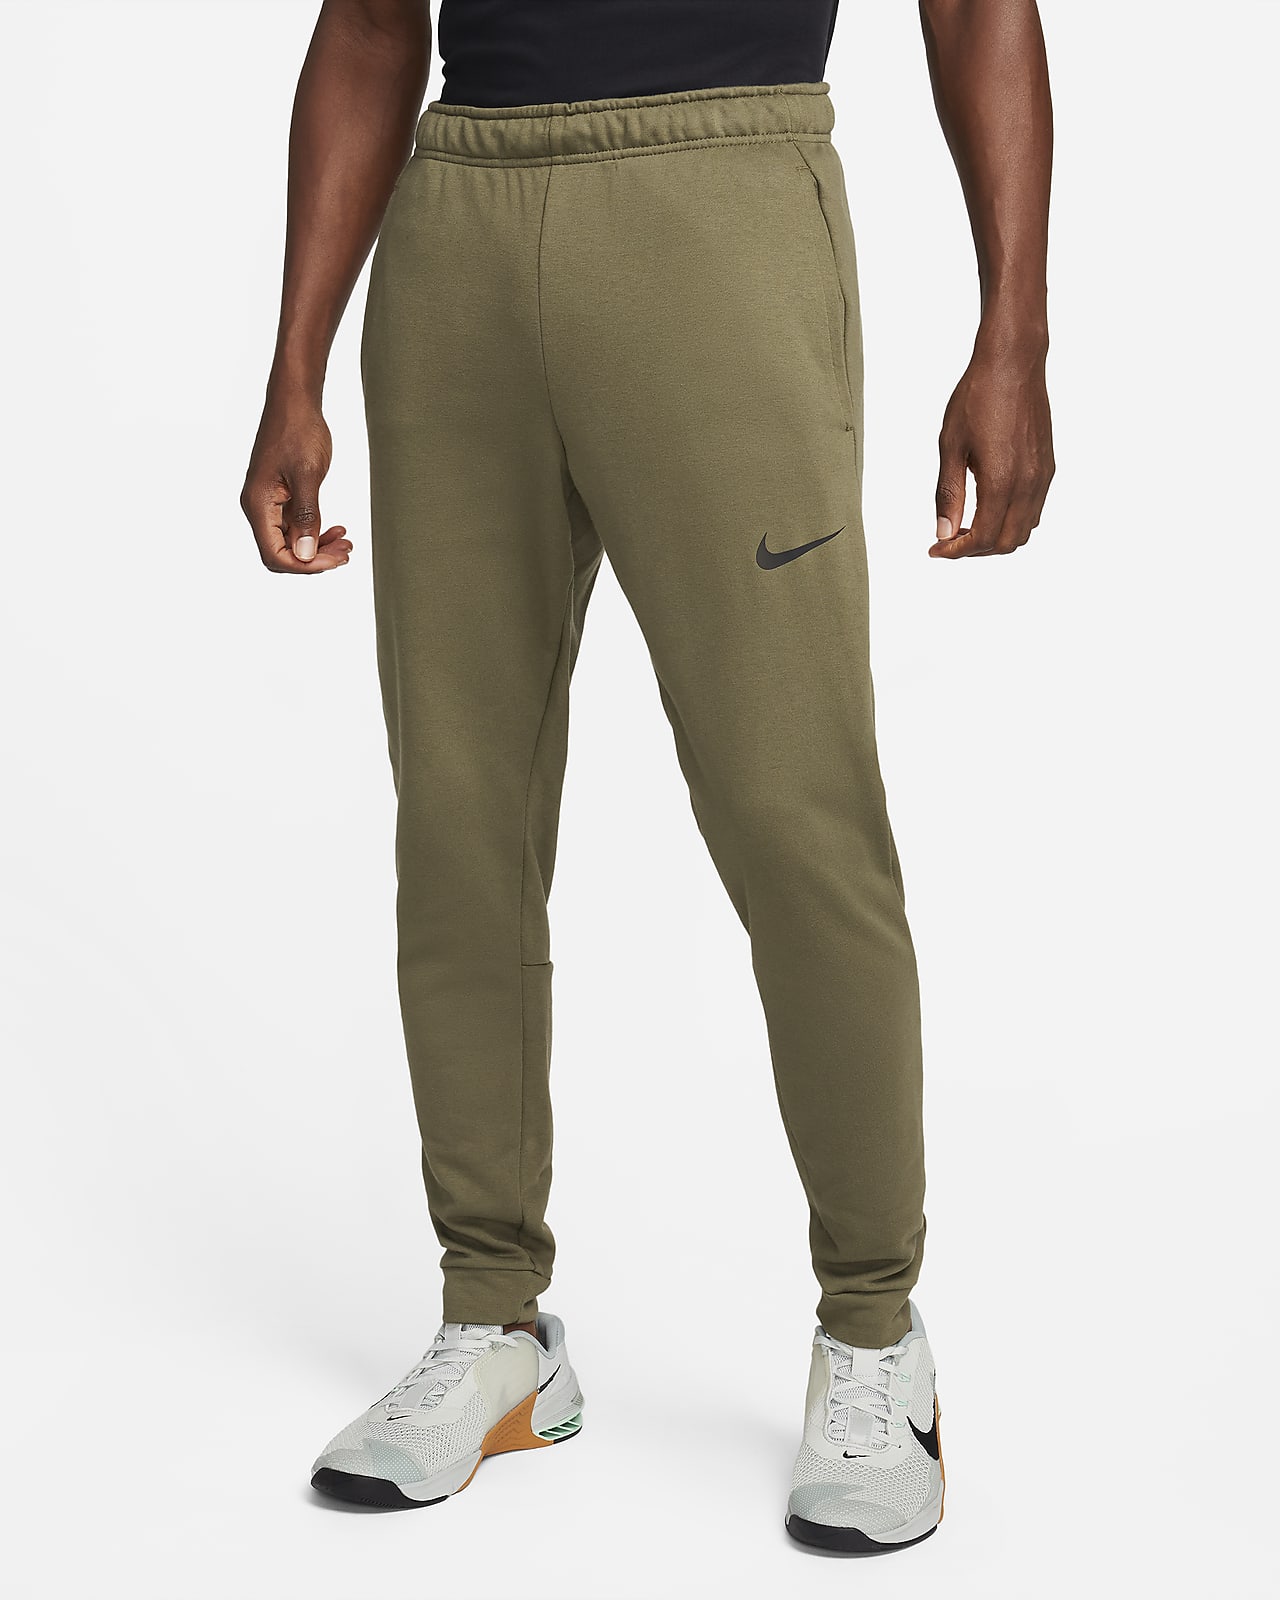 Nike Dry Fleece Kumaştan Bileğe Doğru Daralan Dri-FIT Erkek Fitness Eşofman Altı